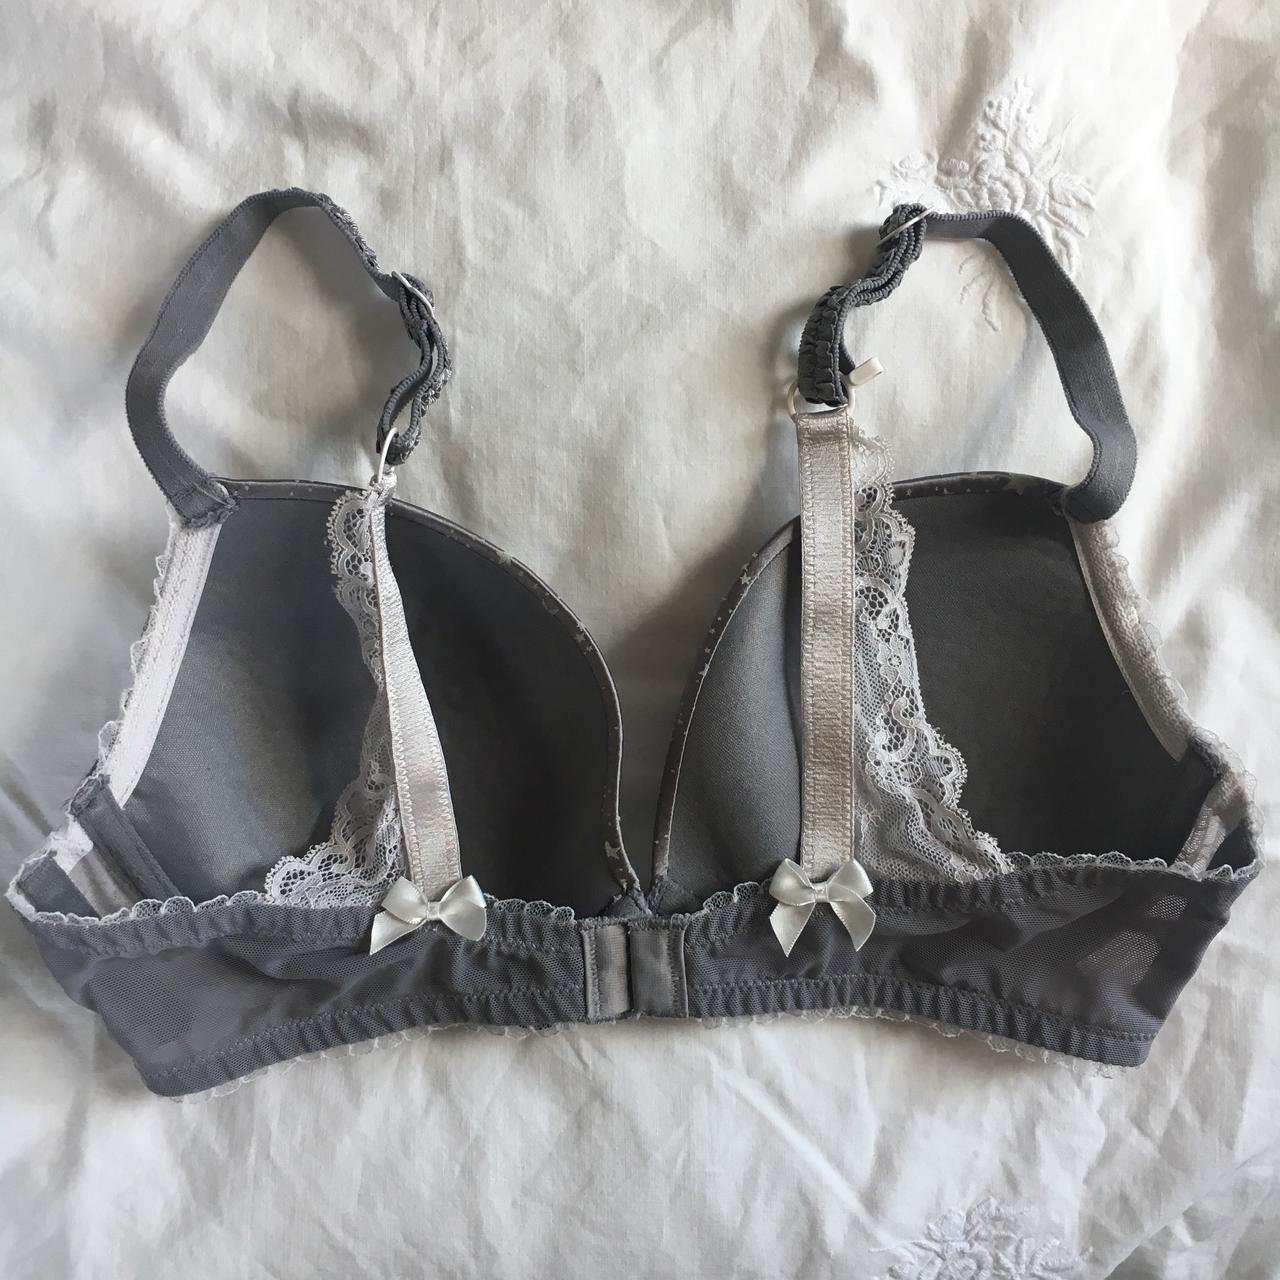 Flooze designer grey silver satin bra ❤️ lingerie ❤️ - Depop